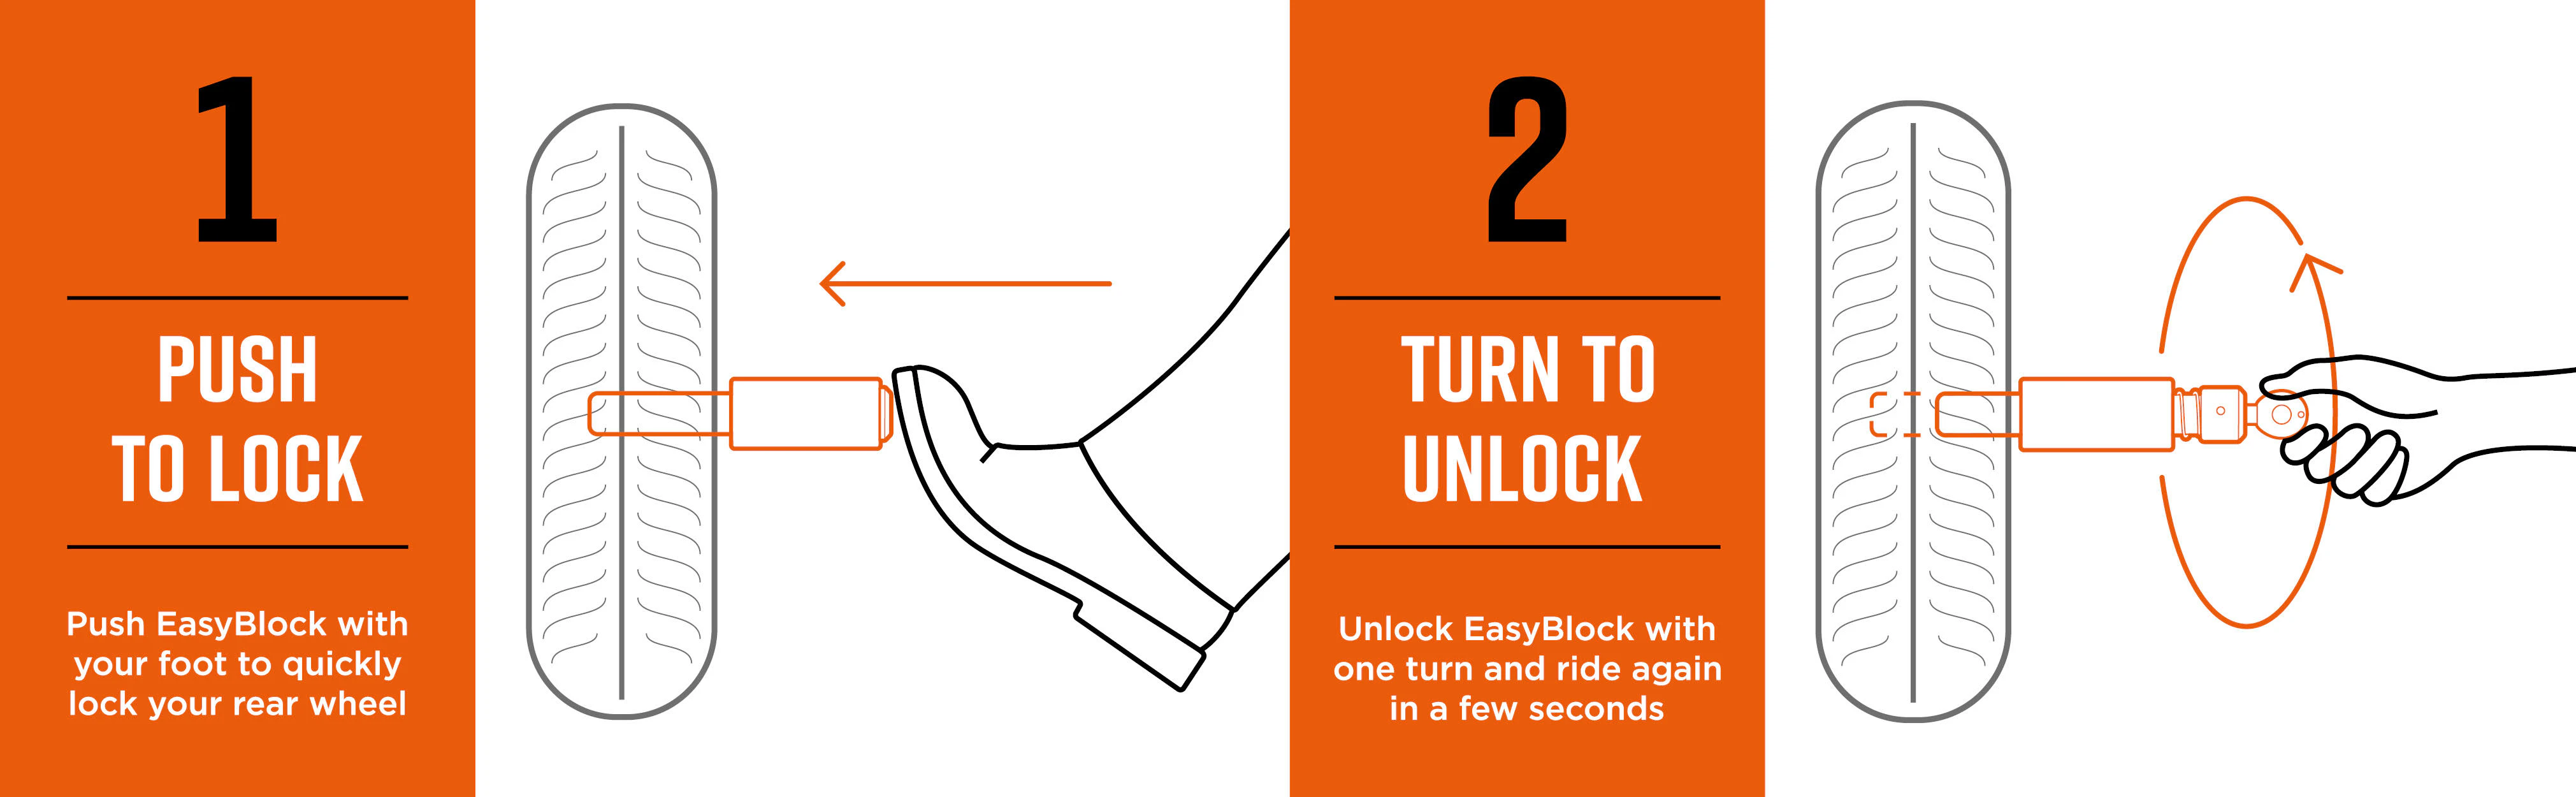 Easyblock Motorcycle Lock